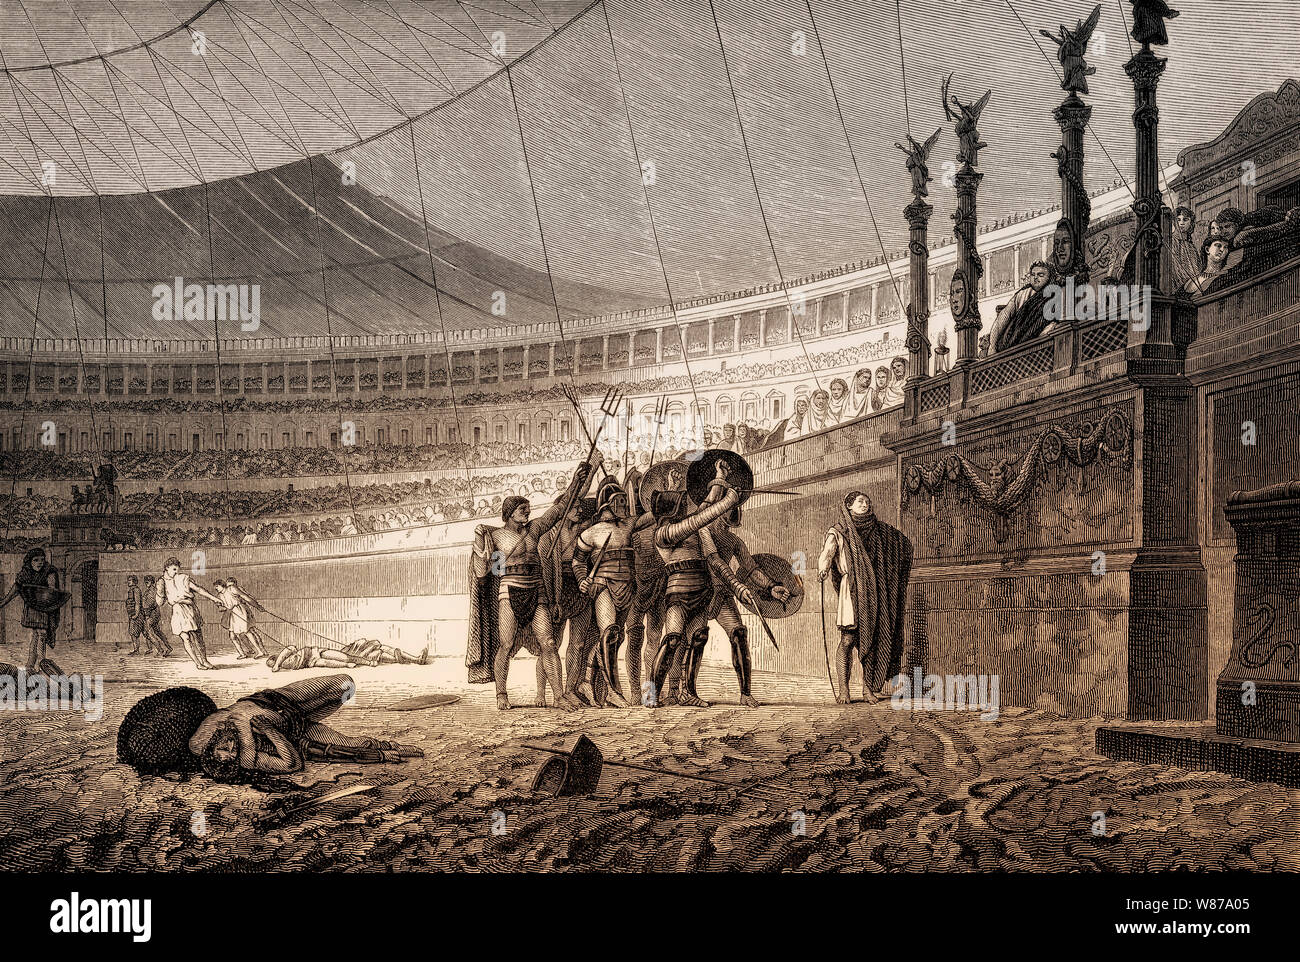 Gladiatorenkämpfe im Kolosseum, antikes Amphitheater in Rom, Italien Stockfoto